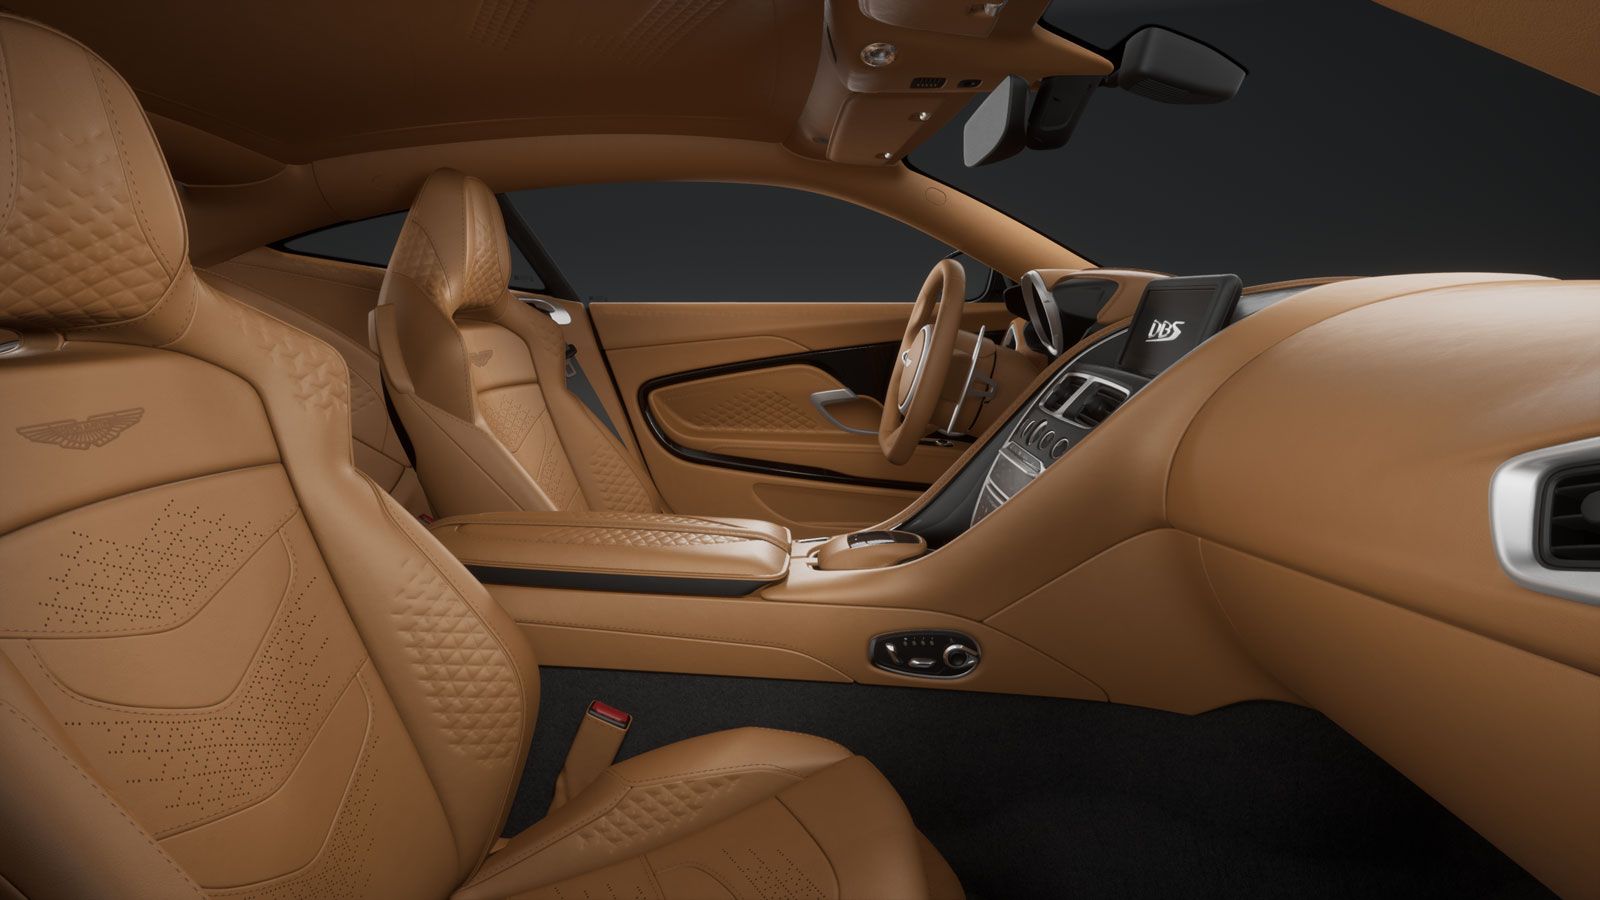 2023 Aston Martin DBS Interior View, Beige